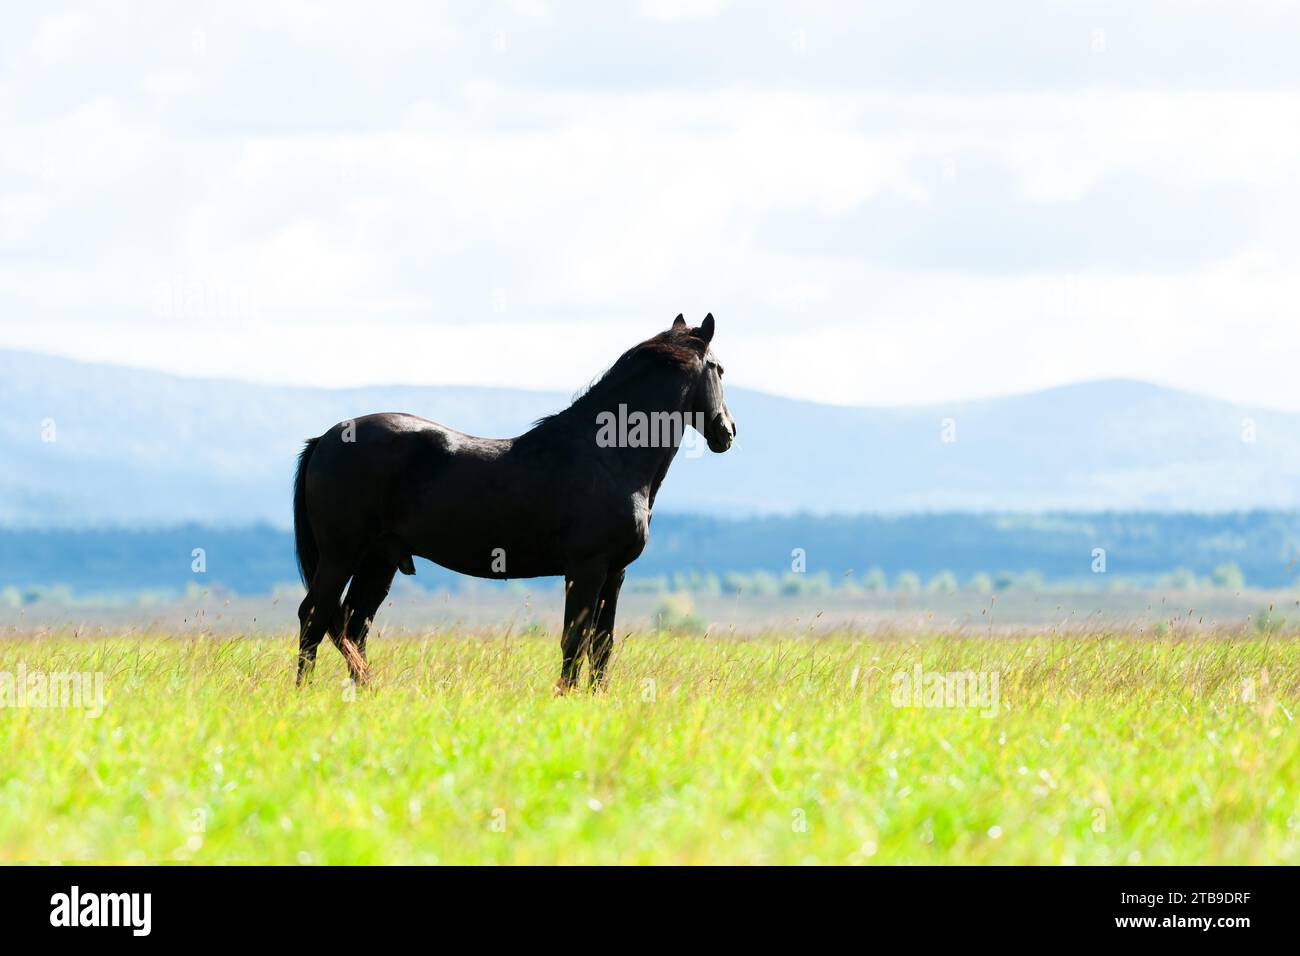 Cavallo nero sottile su pascolo verde con prati verdi lussureggianti sullo sfondo delle montagne. Fotografia di animali Foto Stock